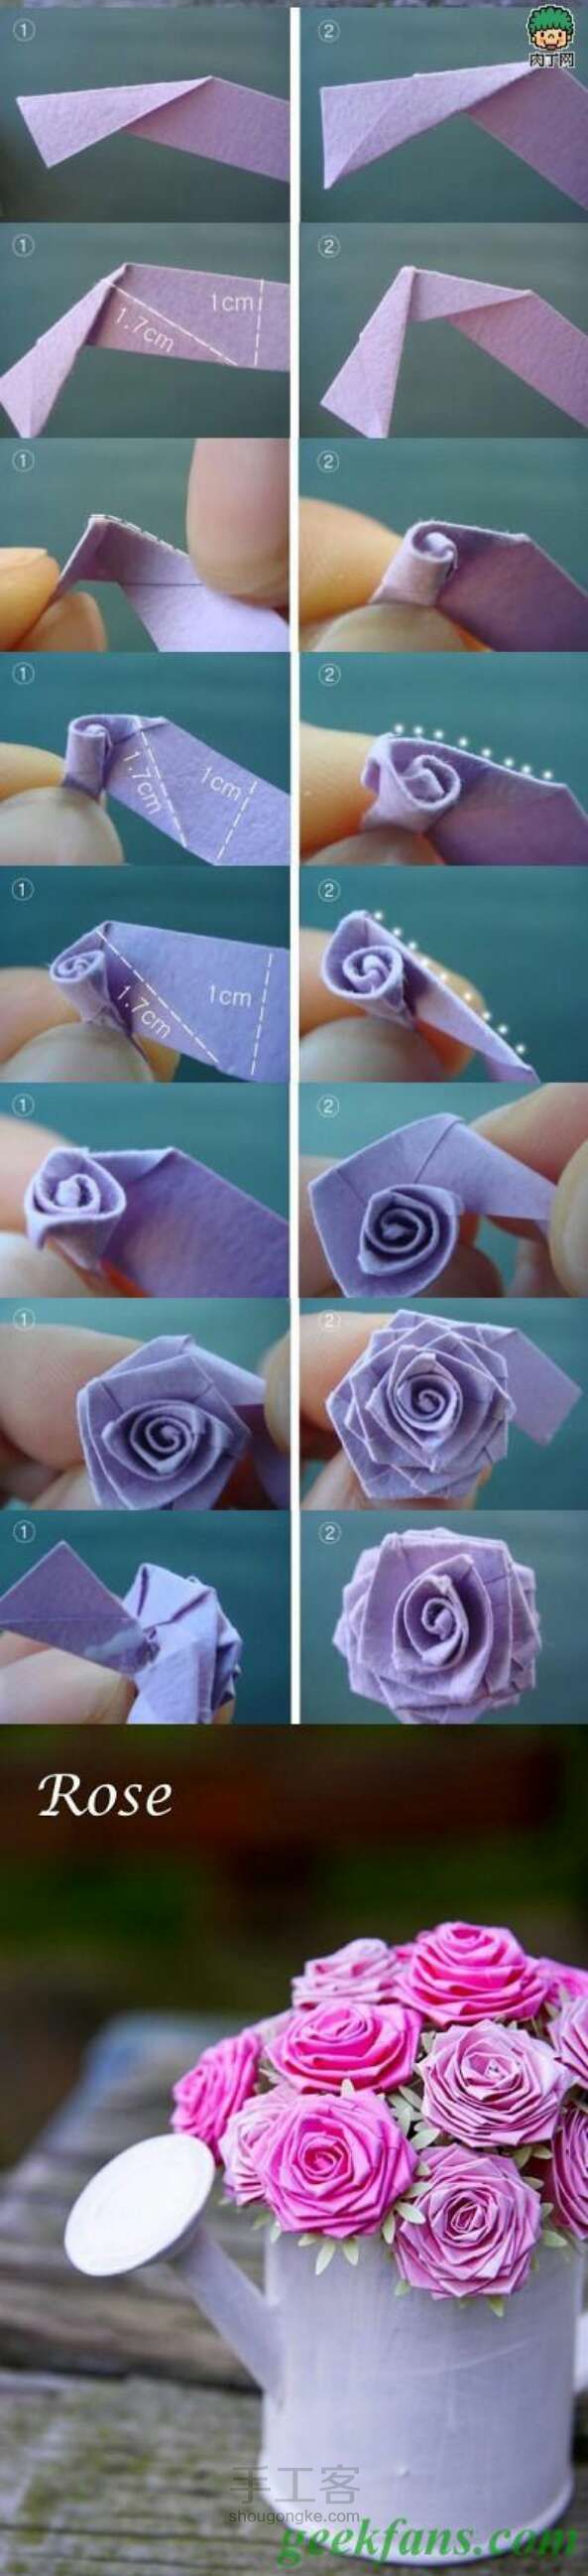 如何用纸折出一朵玫瑰花 第1步